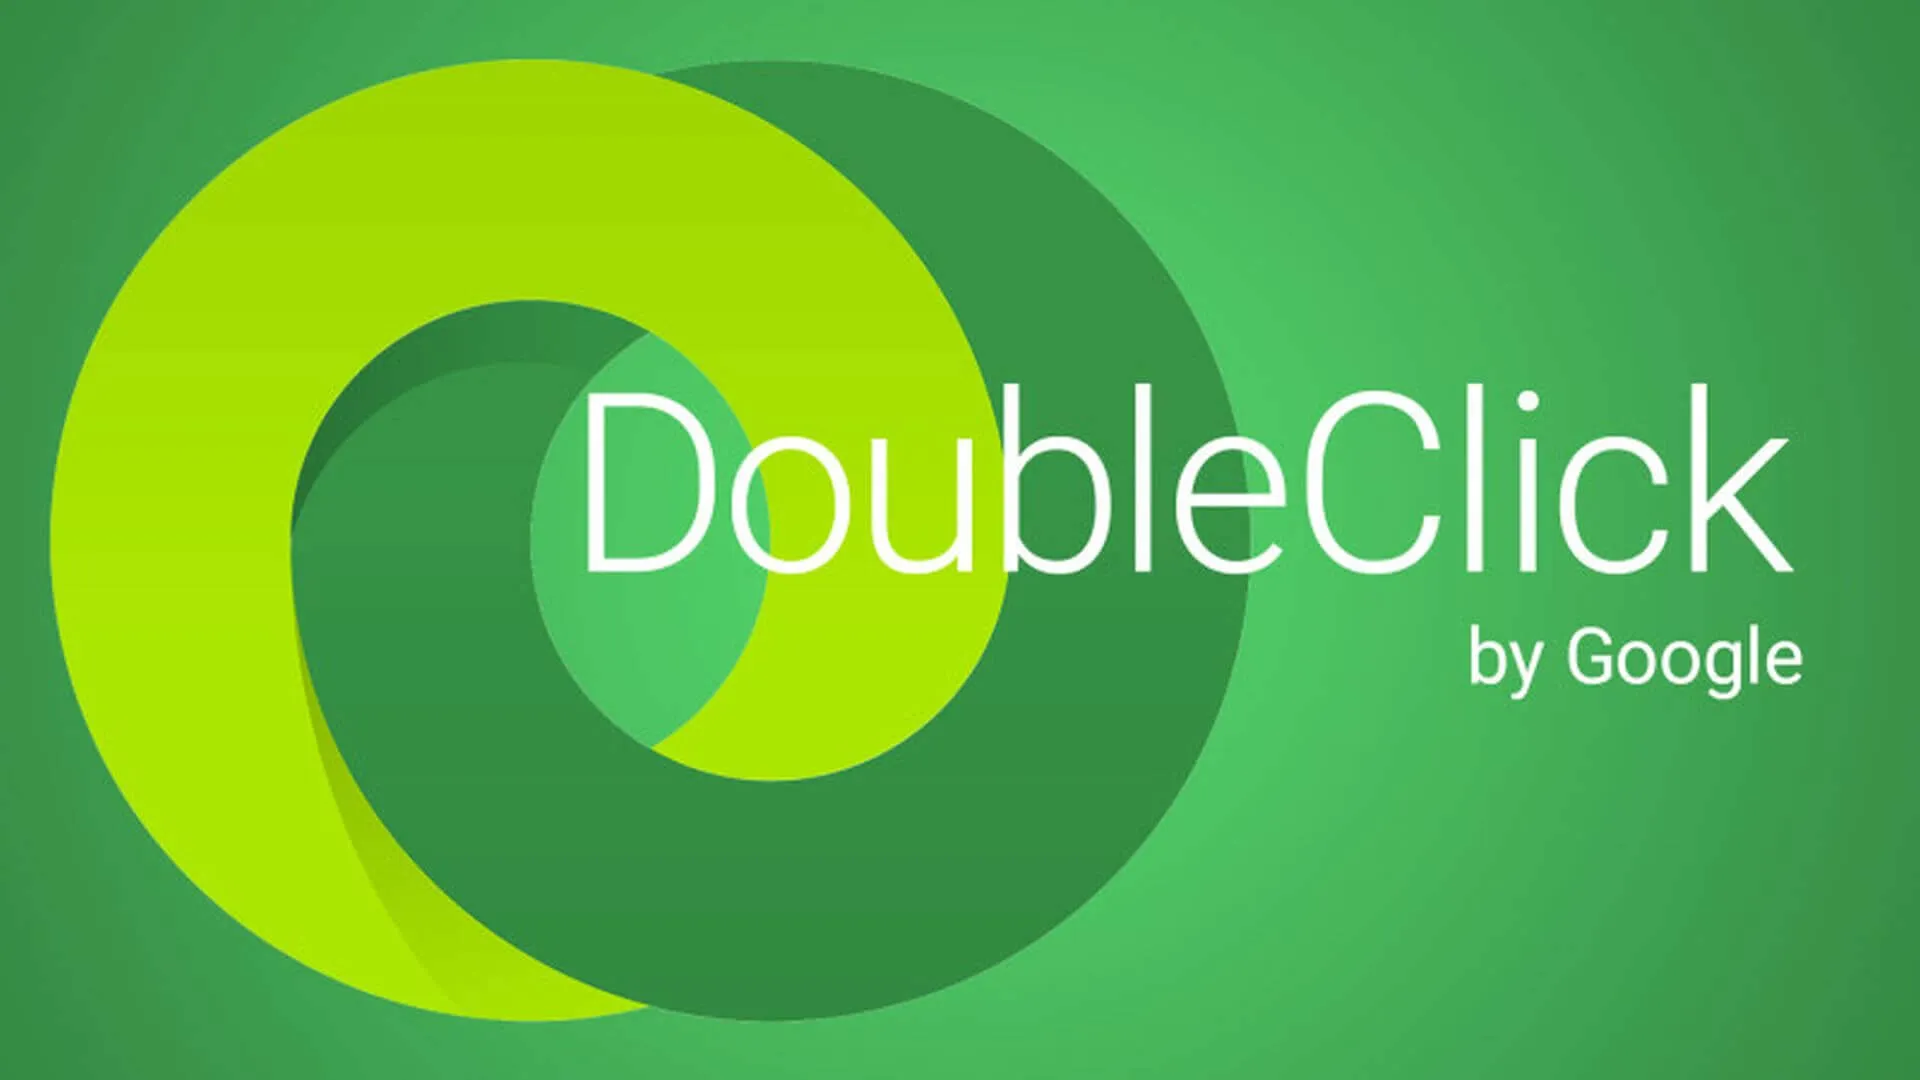 Google Doubleclick là công cụ quảng cáo được phát triển bởi Google